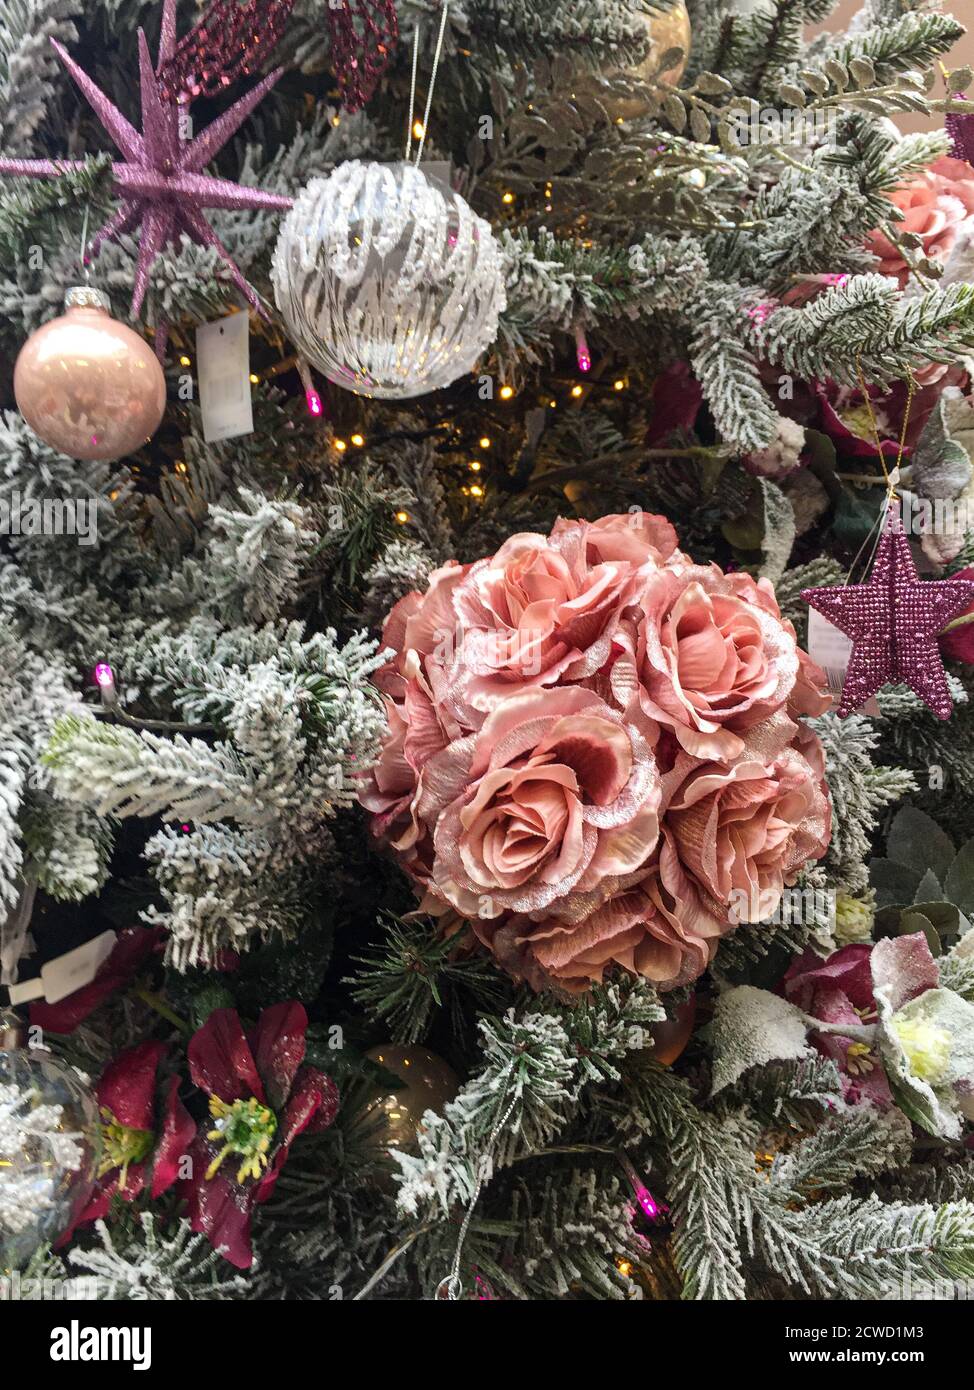 Dekorationen auf Weihnachtsbaum einschließlich rosa Rosen, Sterne und  Kugeln Stockfotografie - Alamy